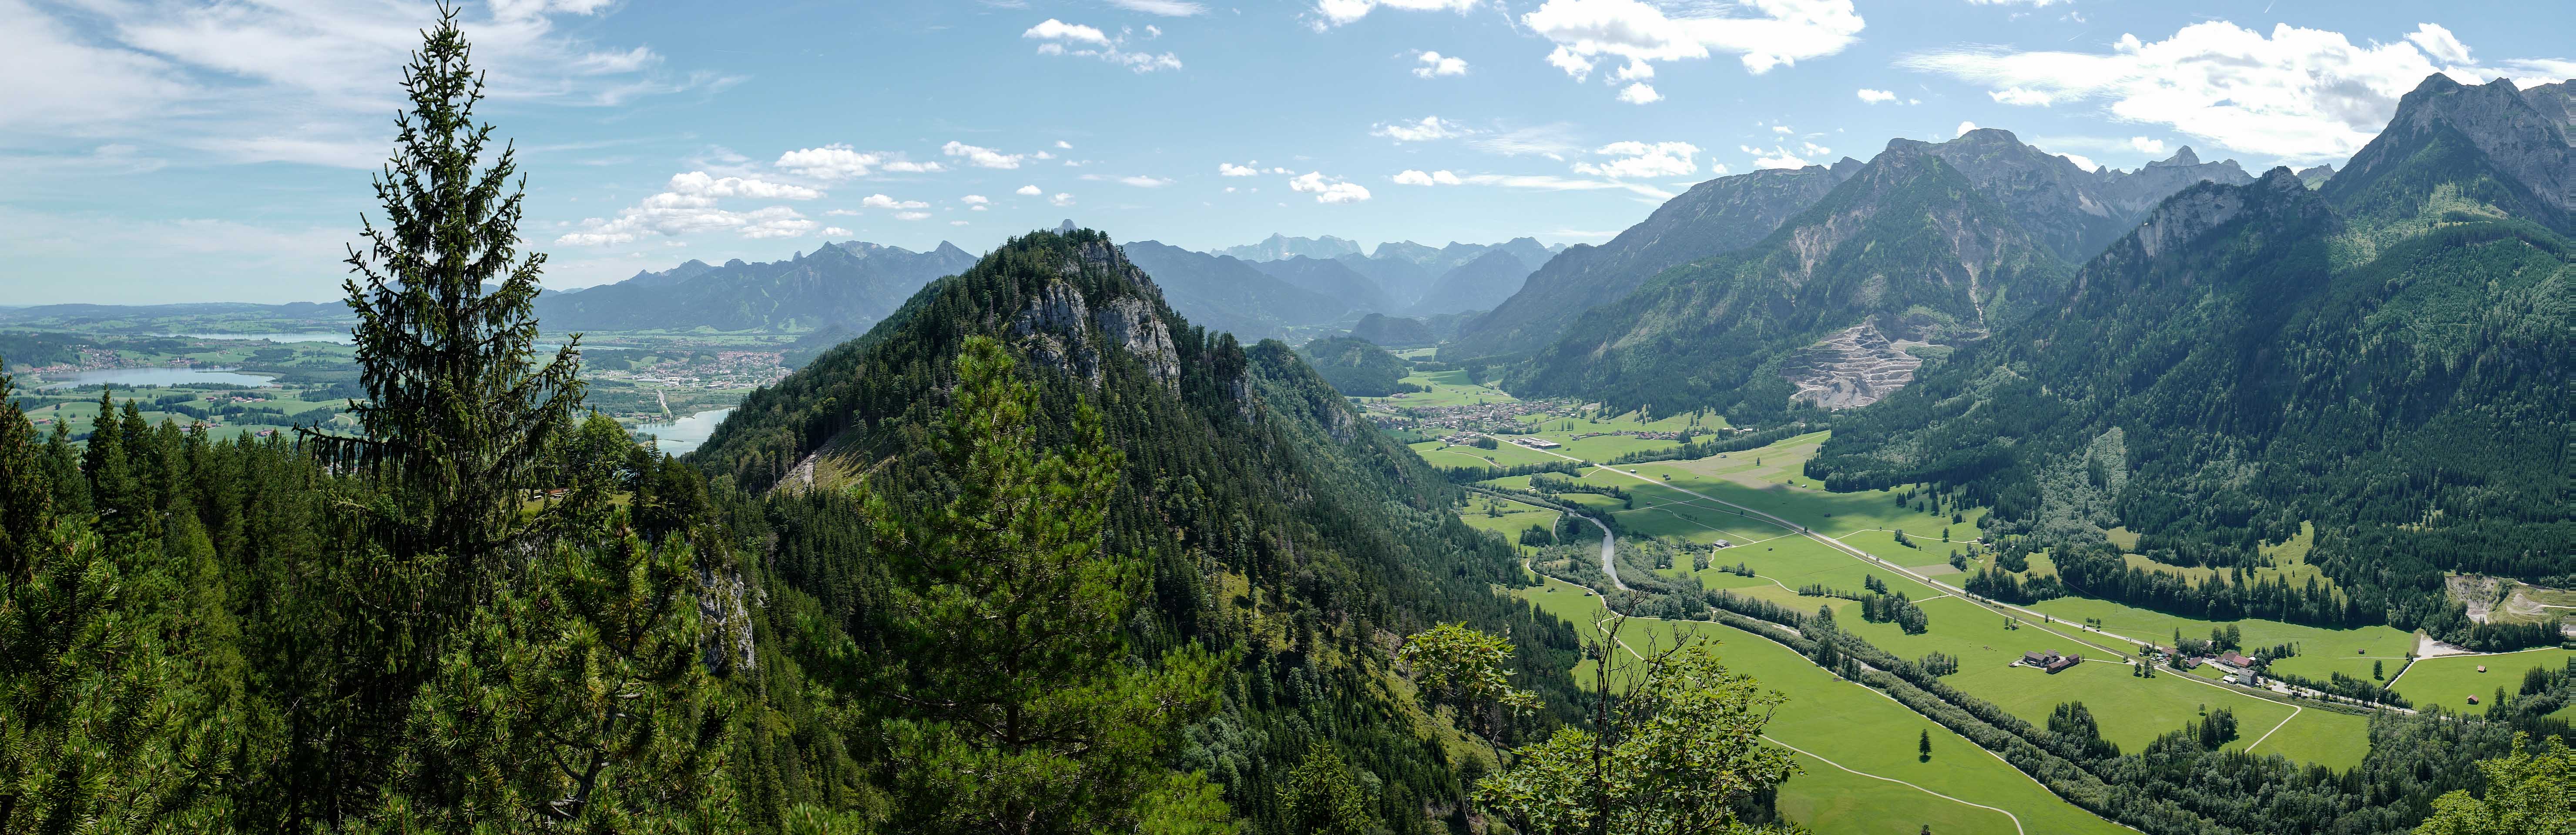 Das Bild zeigt ein atemberaubendes Panorama der Allgäuer Alpen, das von üppigen grünen Tälern, schroffen Berggipfeln und einem klaren Himmel geprägt ist. Im Vordergrund befindet sich ein felsiger Berg, der mit grünen Bäumen und Vegetation bedeckt ist. Jenseits dieses Berges erstrecken sich ausgedehnte grüne Täler, die von Wäldern und offenen Flächen durchsetzt sind. Ein gewundener Fluss schlängelt sich durch das Tal. In der Ferne erheben sich mehrere Berggipfel majestätisch gegen den Horizont; ihre schroffen Umrisse erzeugen einen dramatischen Kontrast zum Himmel. Diese Sommerlandschaft wurde vom heidelberger Fotografen Simon Fritz aufgenommen und ist in seinem Wandbilder Shop erhältlich.